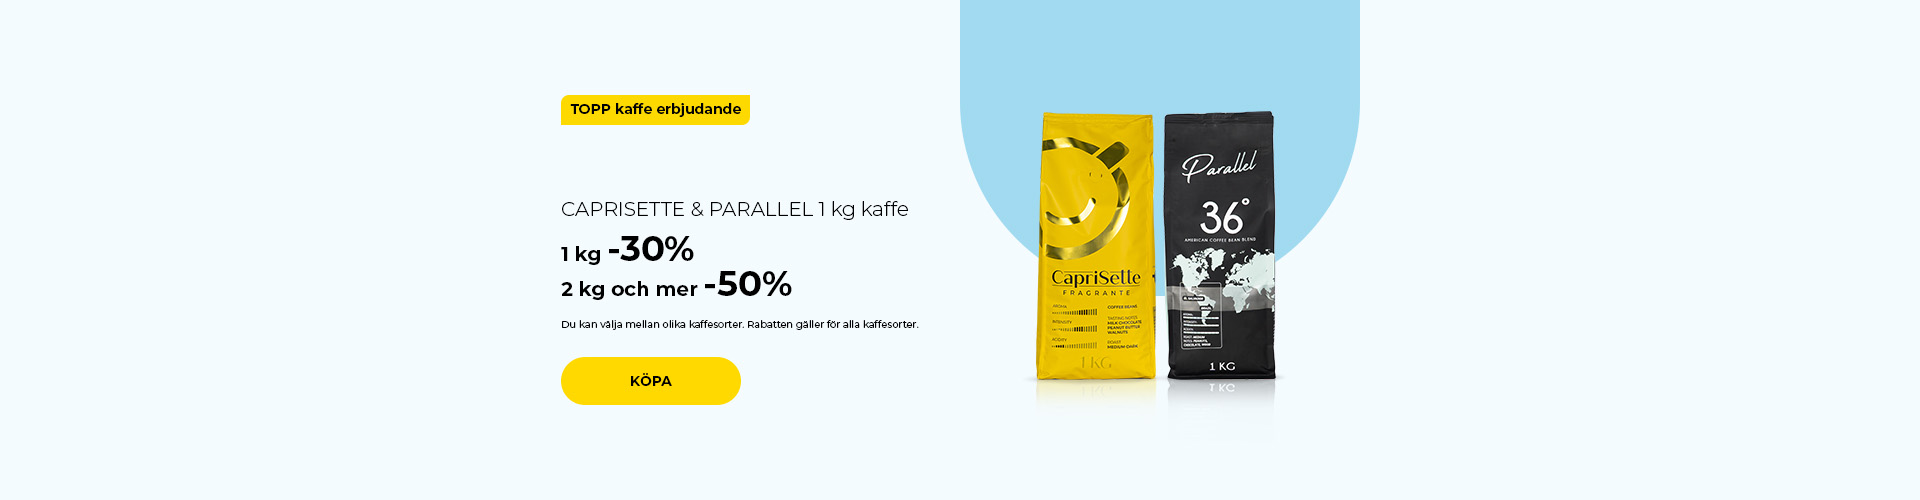 CAPRISETTE & PARALLEL 1 kg kaffe 1 kg -30% 2 kg och mer -50%